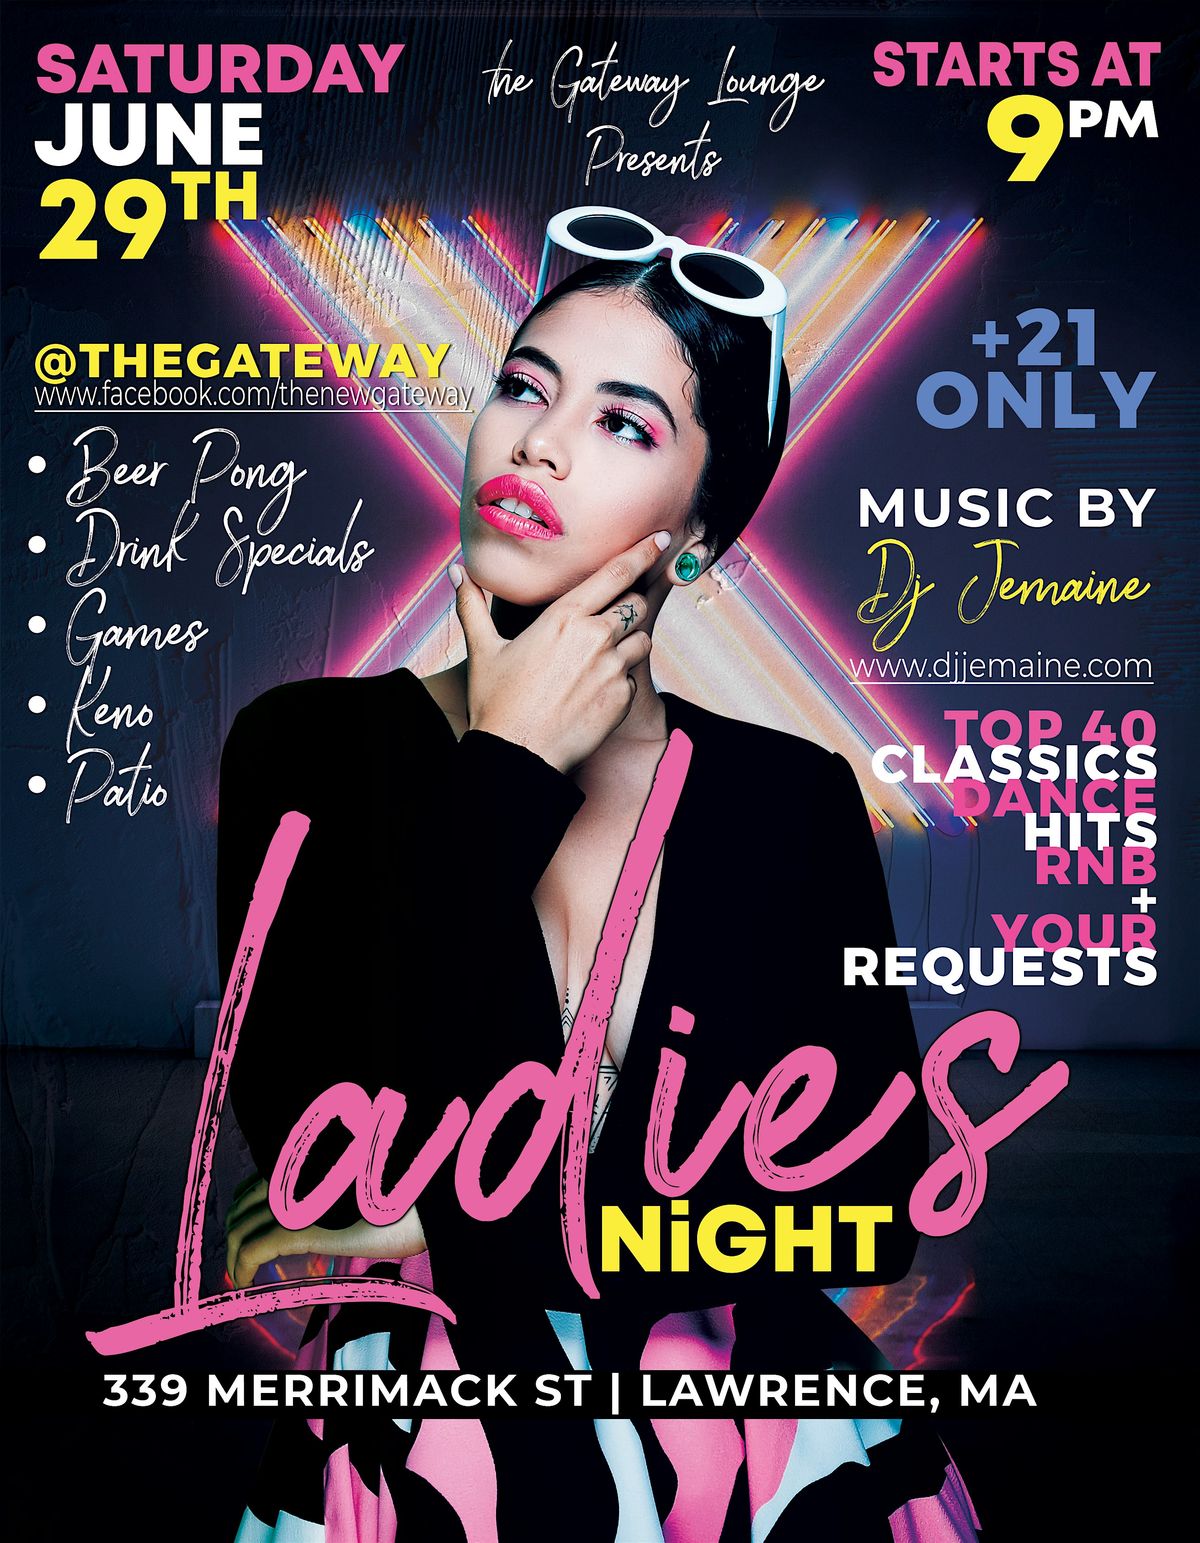 Ladies Night at The Gateway Lounge!